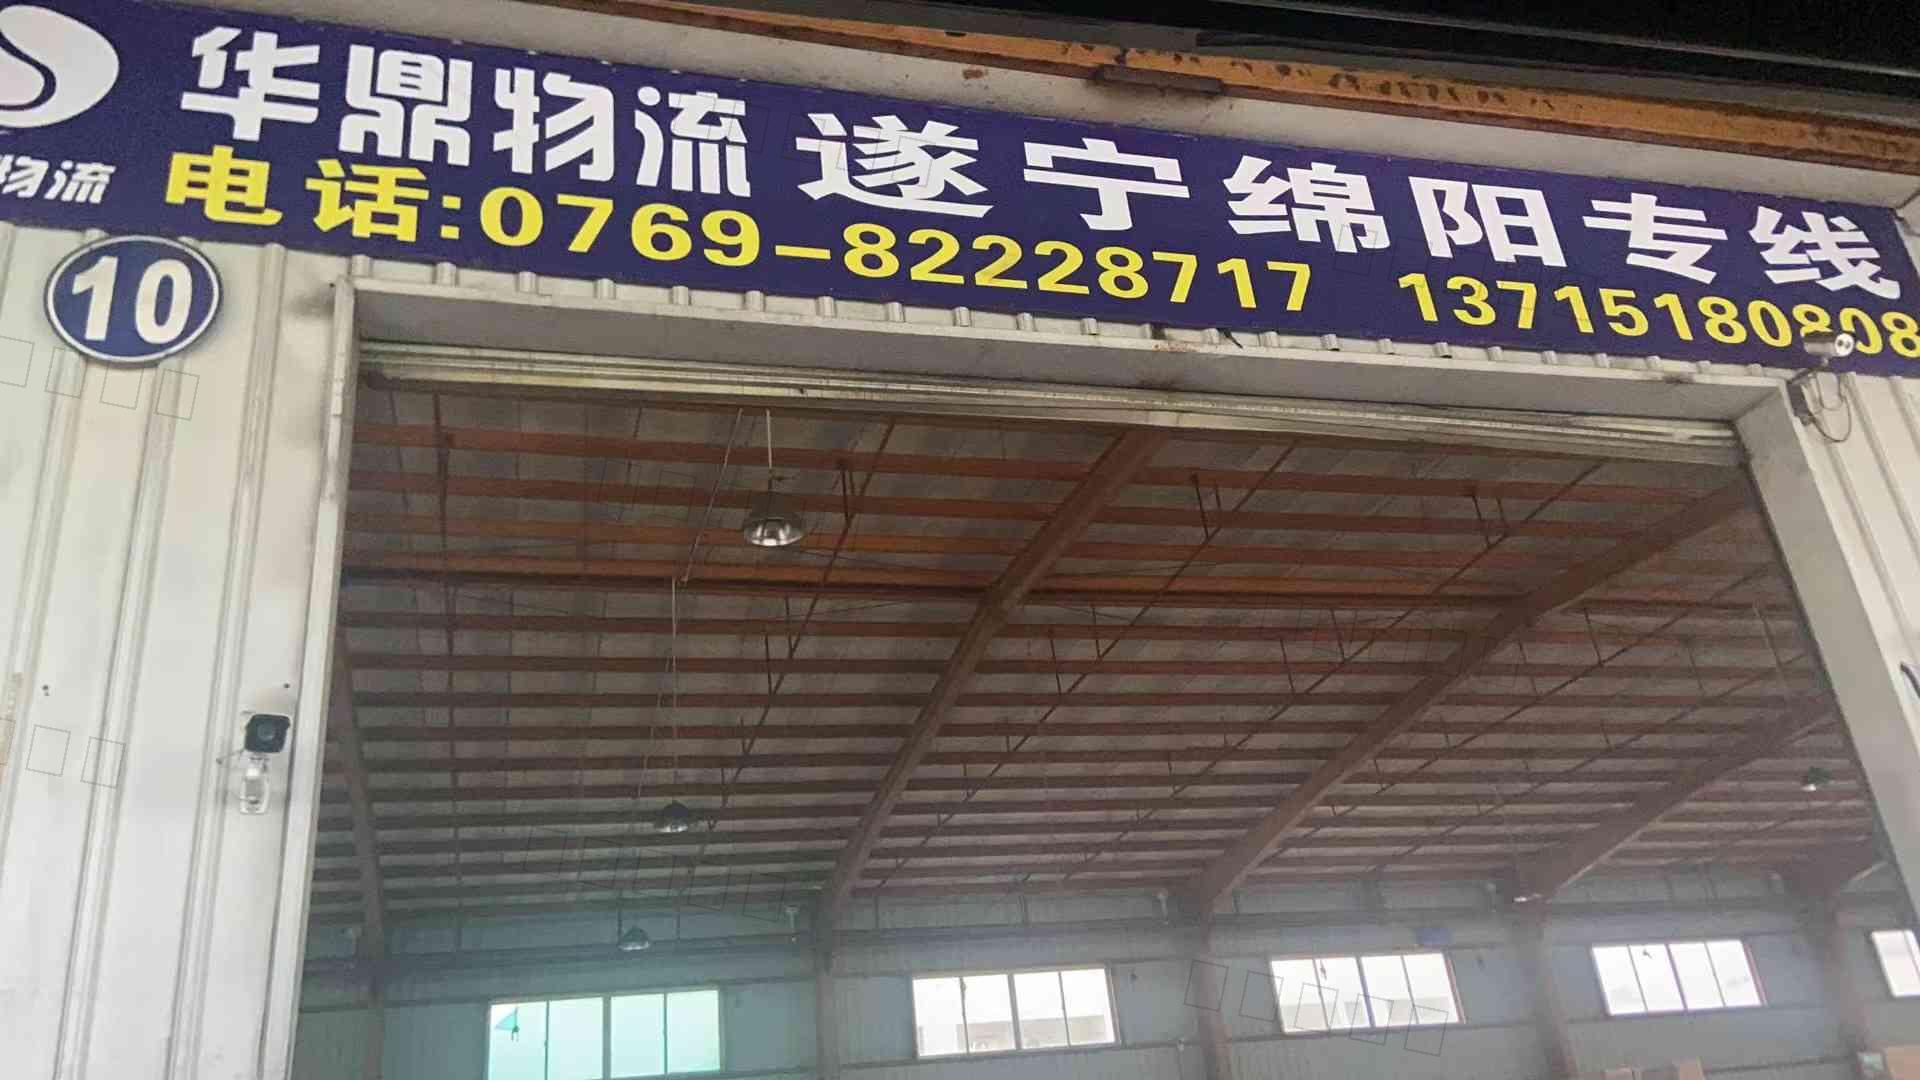 深圳市华鼎货运代理有限公司